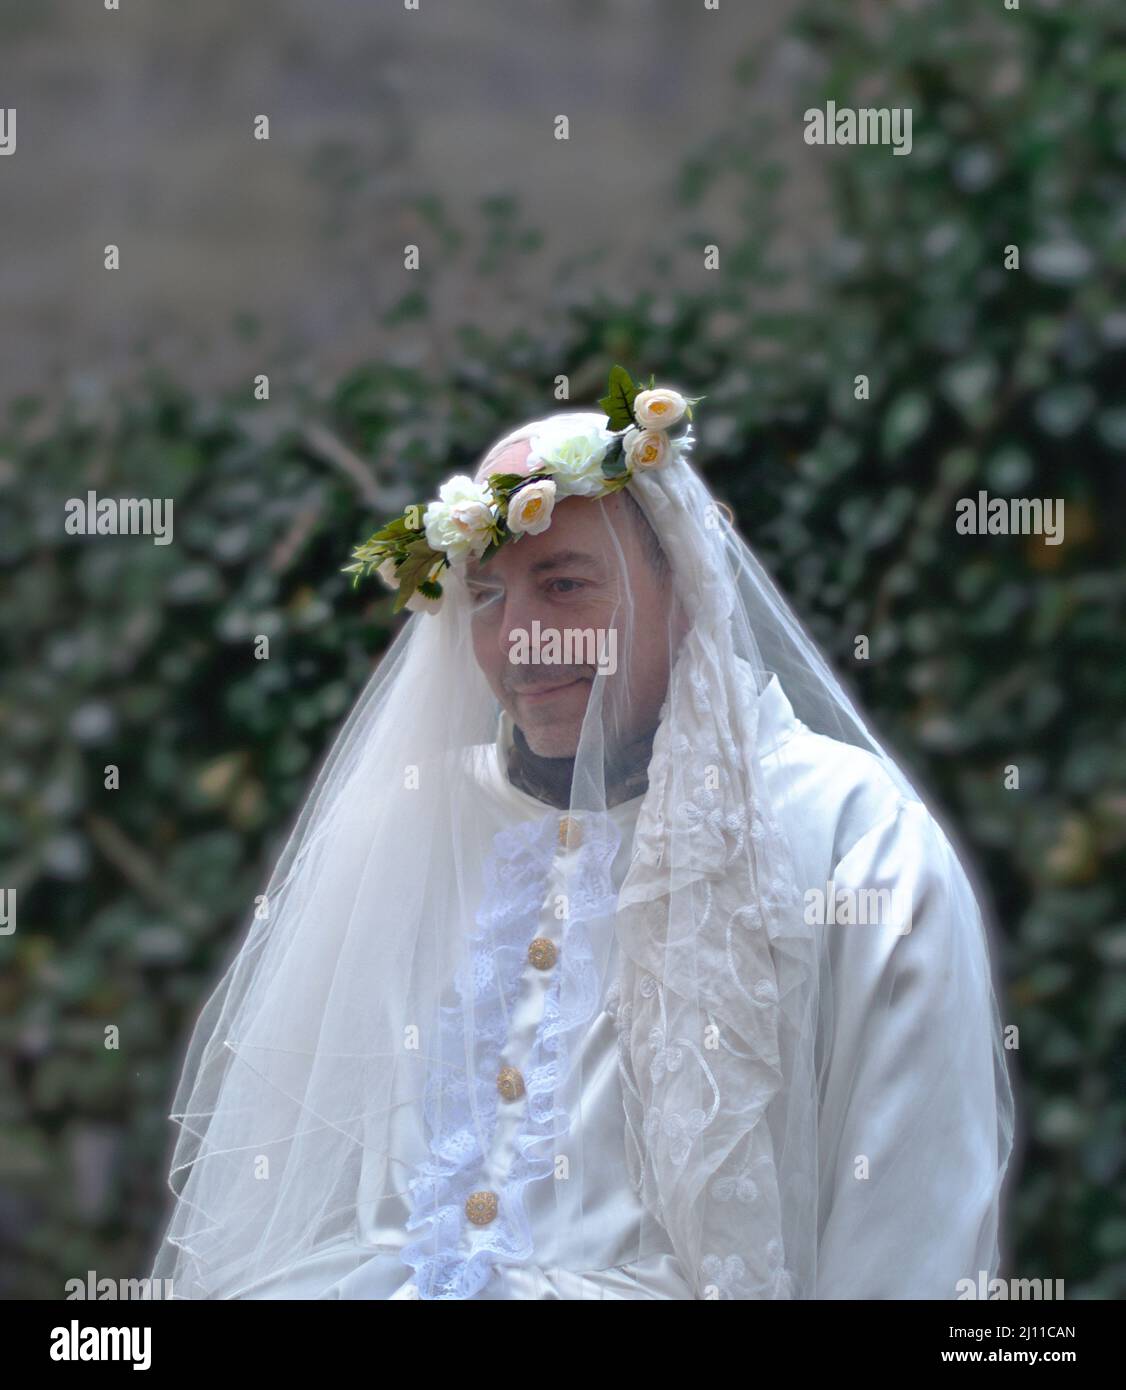 Enciso, Spanien – 5. März 2022: Schüchterner Mann in einem weißen Hochzeitskleid und Blumenkrone auf dem Kopf, der wegschaut. Traditioneller Karneval von Enciso. Stockfoto